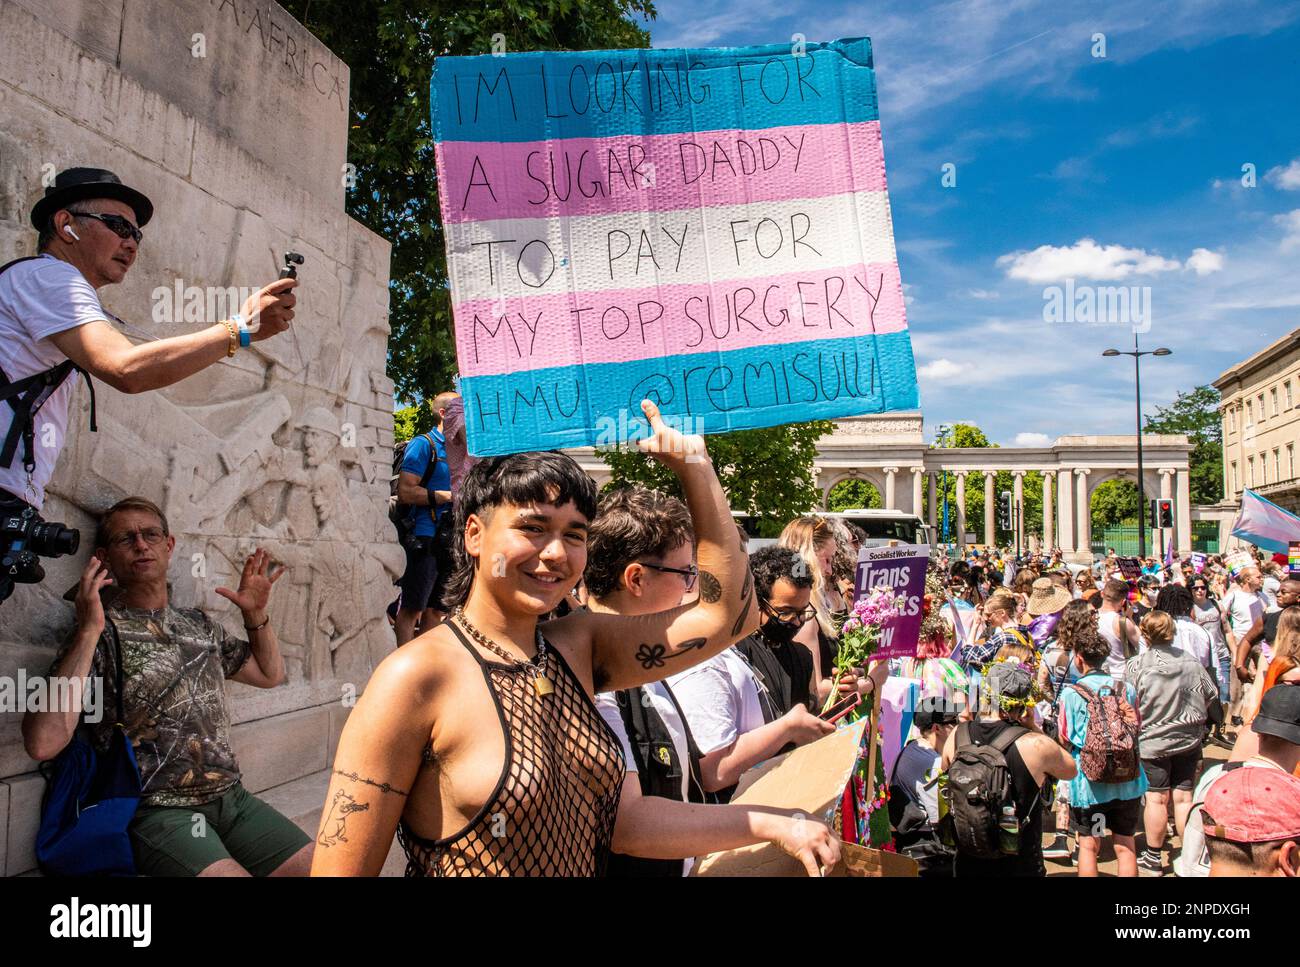 Un membre de la communauté LGBTQ+ sourit et tient une bannière pour protester contre le manque de droits et de soins de santé pour les personnes transgenres. Banque D'Images